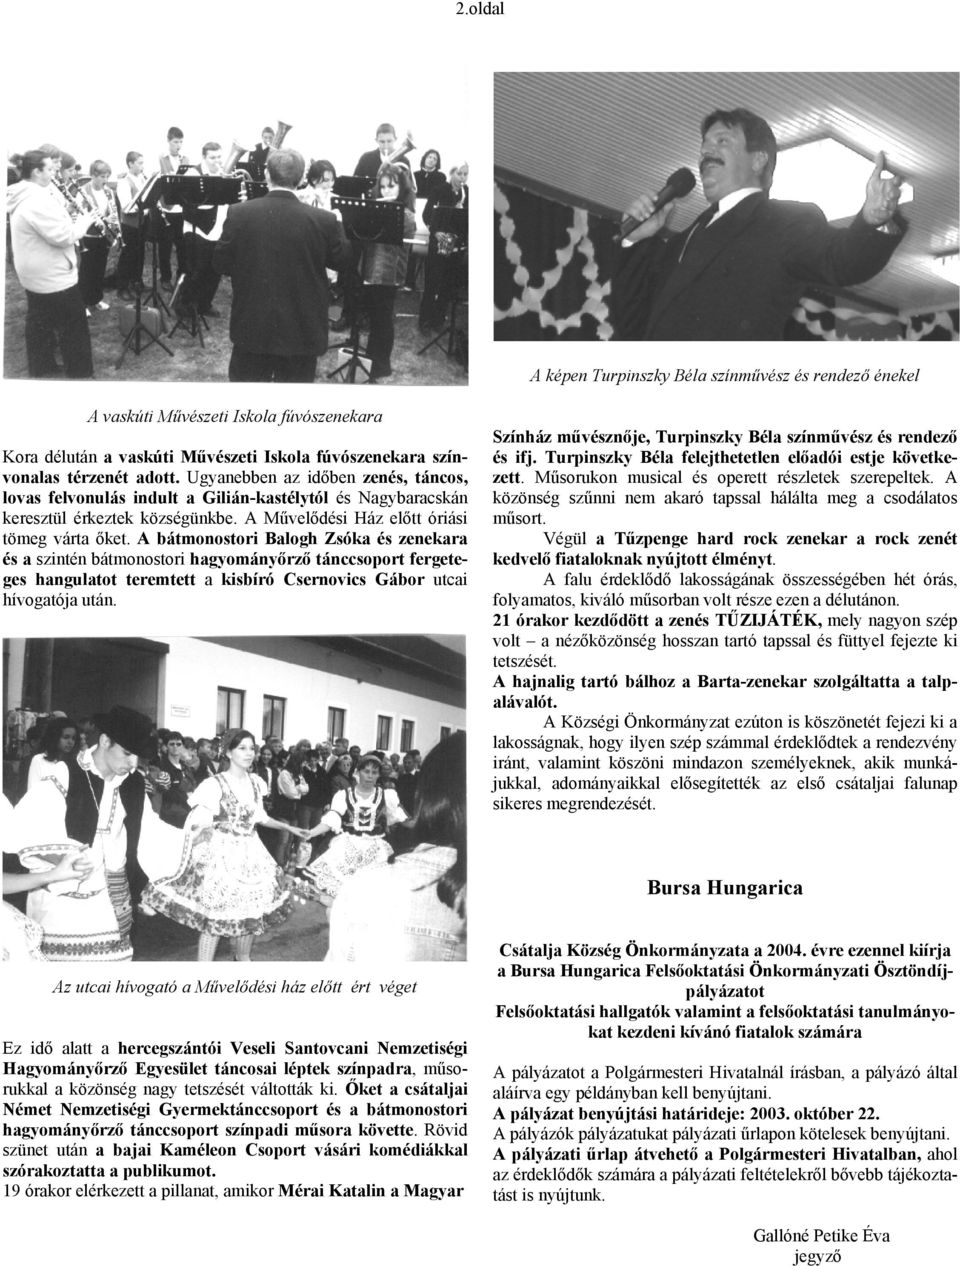 A bátmonostori Balogh Zsóka és zenekara és a szintén bátmonostori hagyományőrző tánccsoport fergeteges hangulatot teremtett a kisbíró Csernovics Gábor utcai hívogatója után.